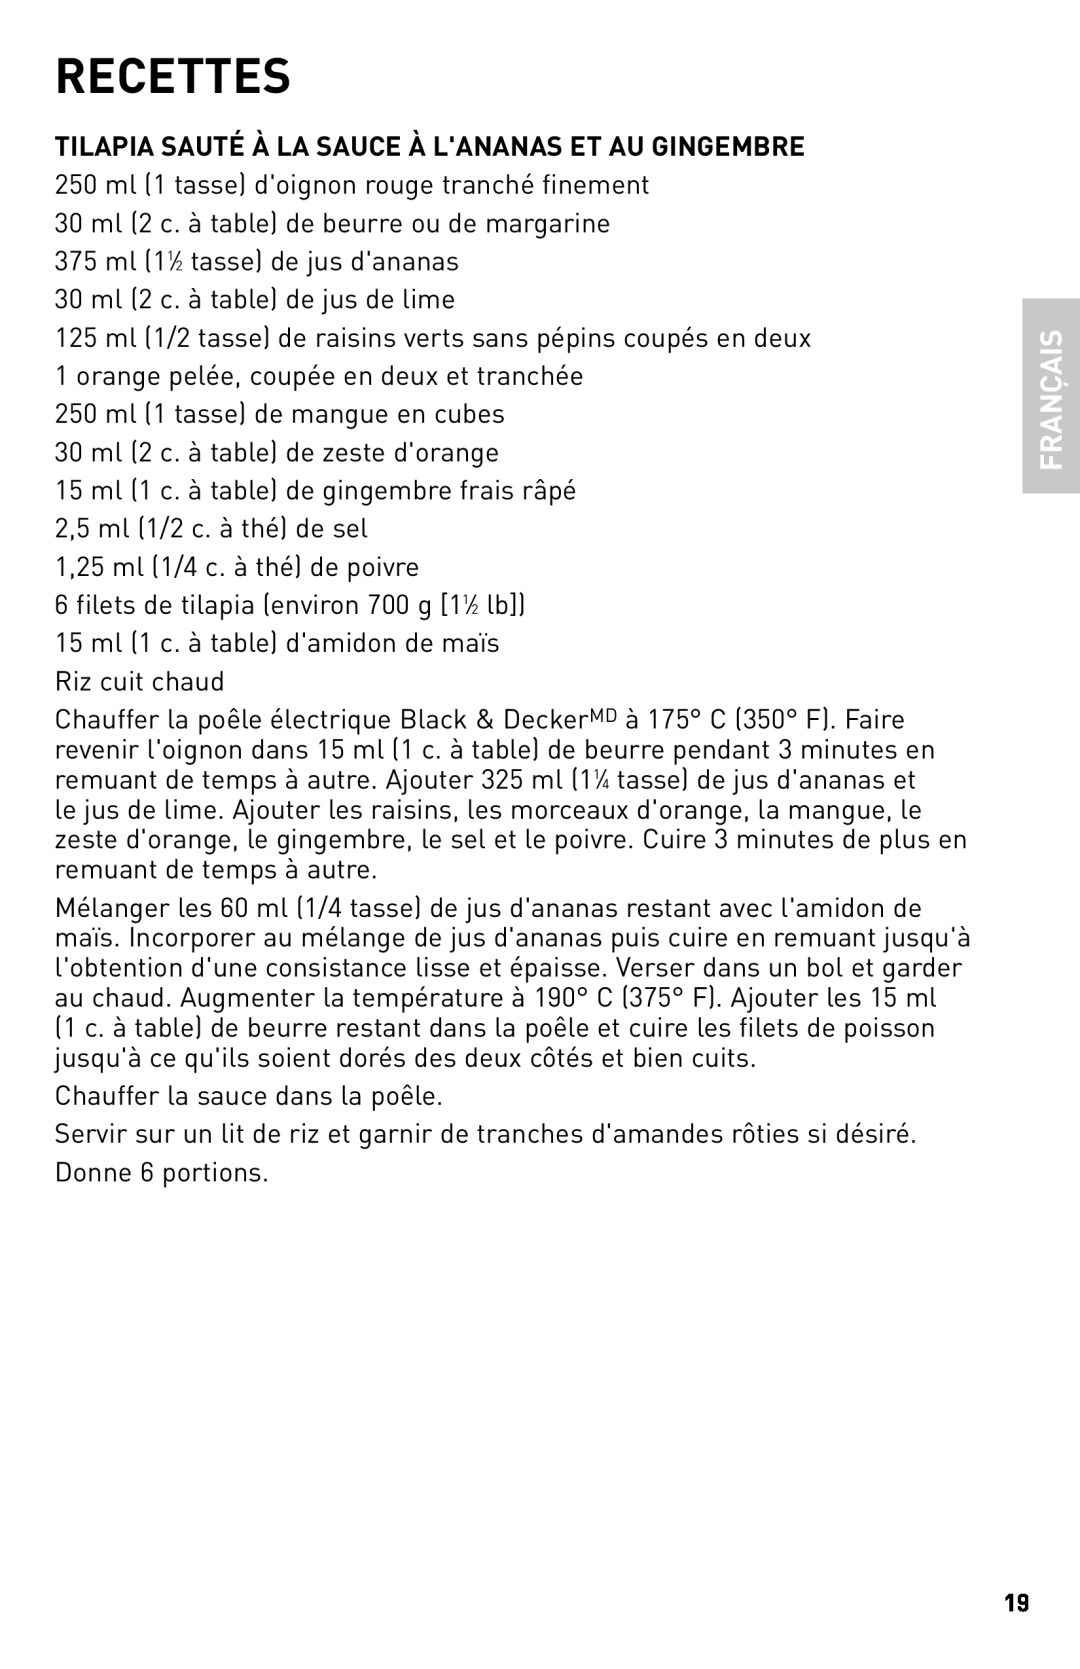 Black & Decker SKG110C manual Recettes, Français 